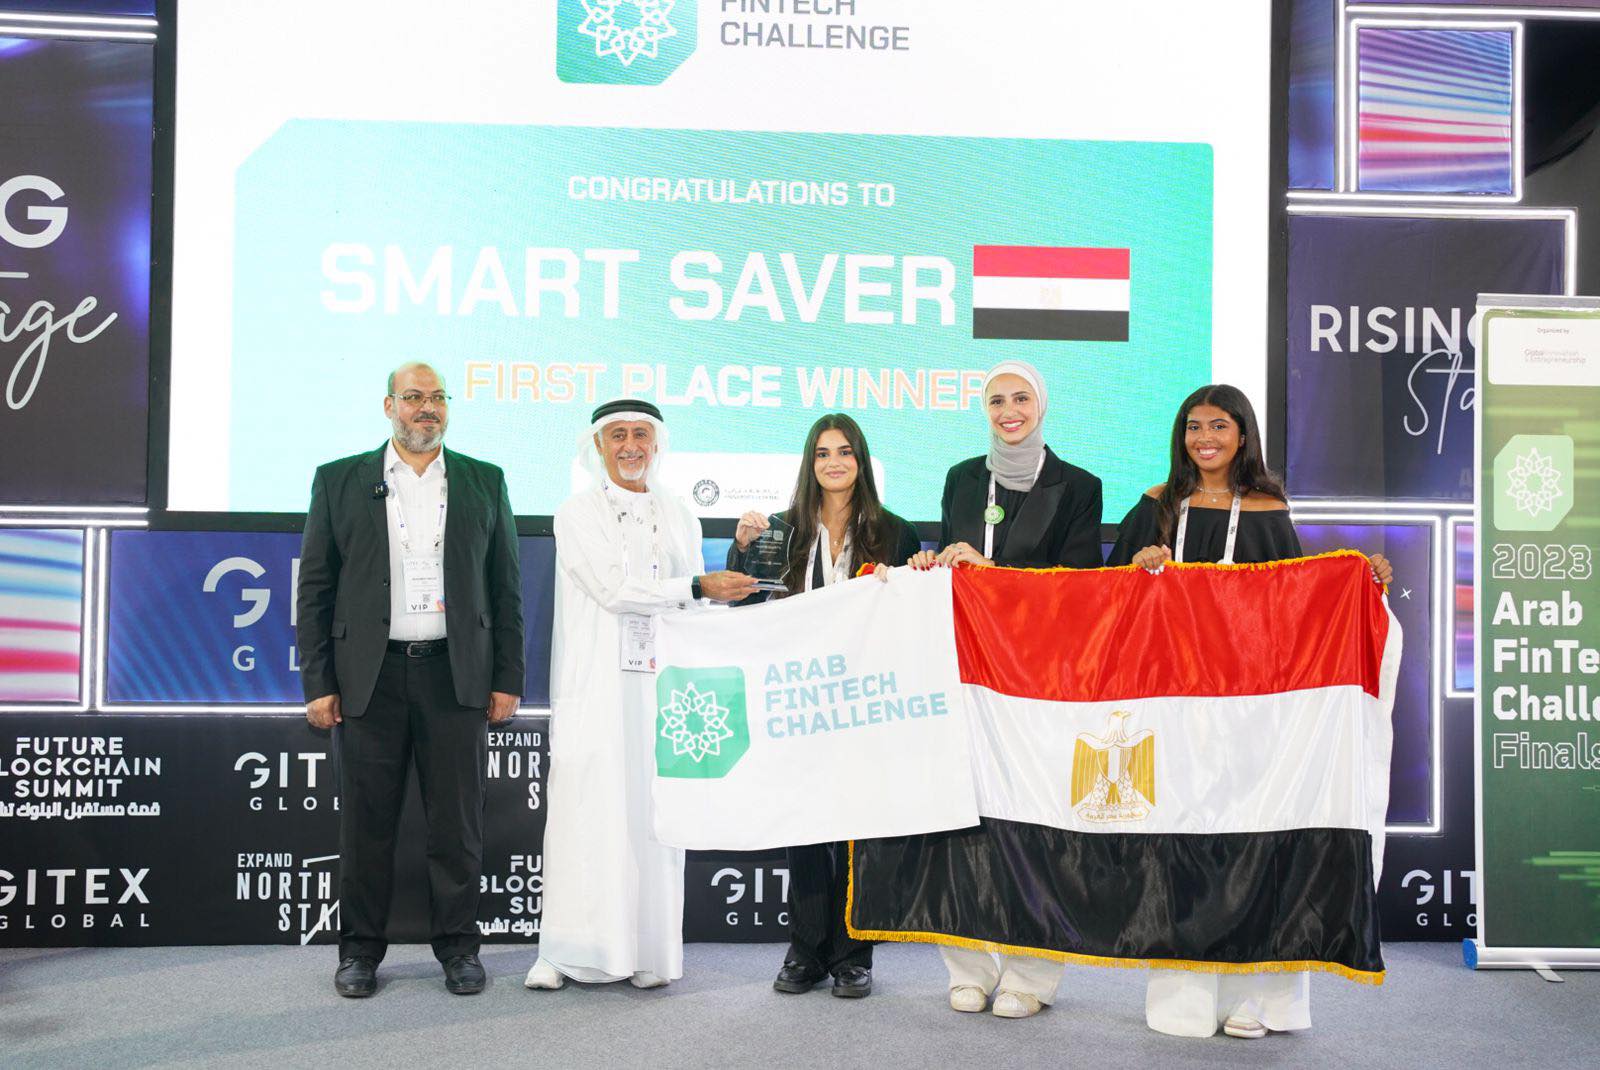 الفريق المصري يقتنص صدارة النسخة الأولى من مسابقة العرب للتكنولوجيا المالية